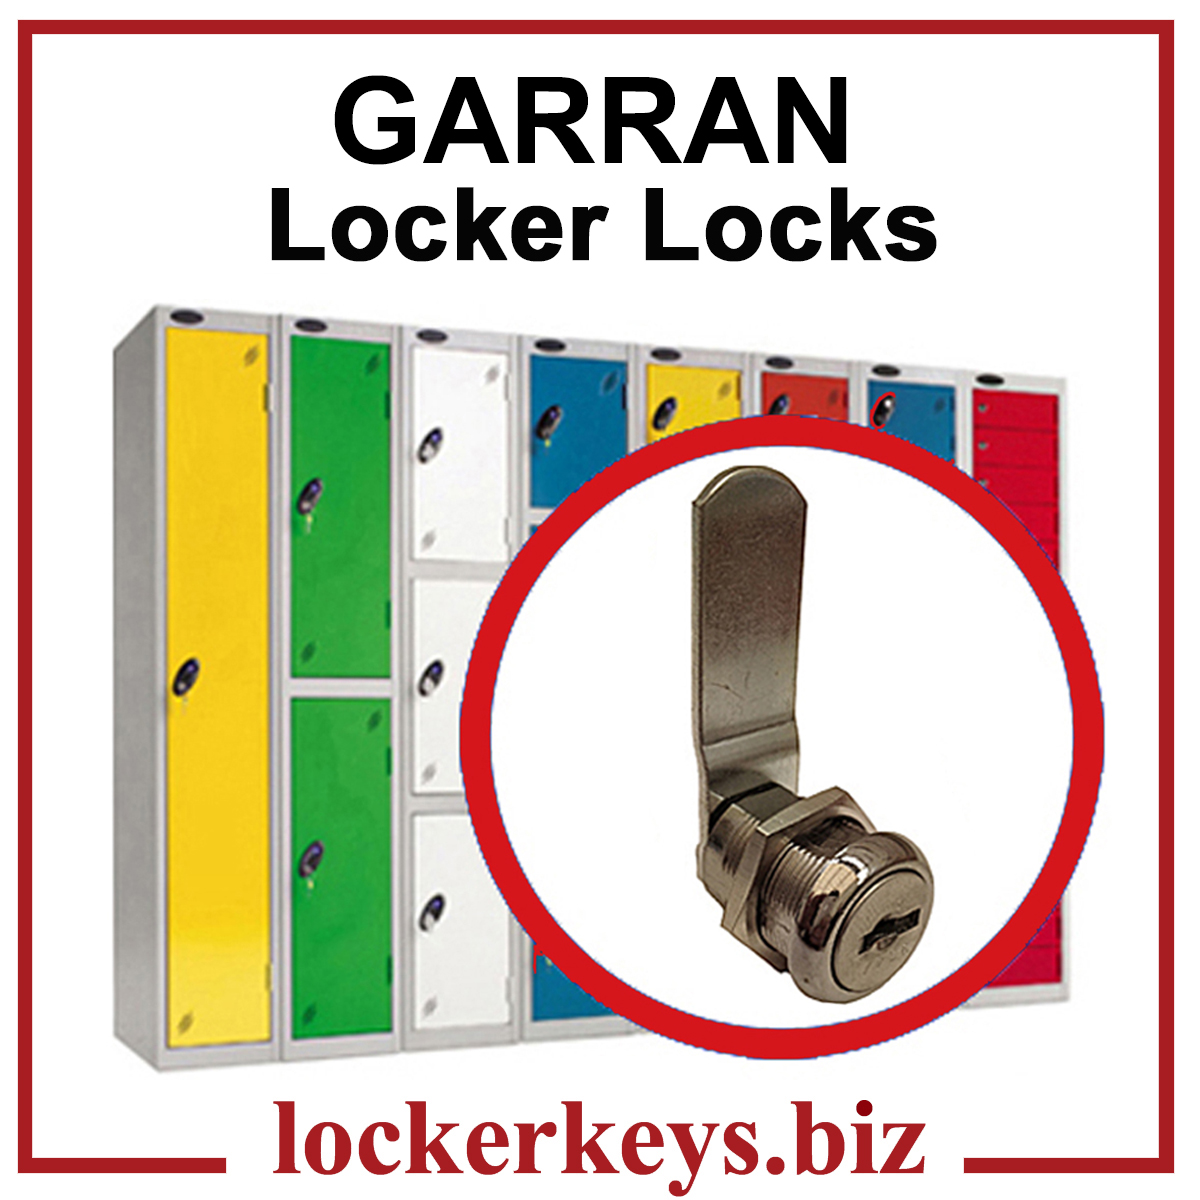 Garran Locker Locks mastered under the M21A